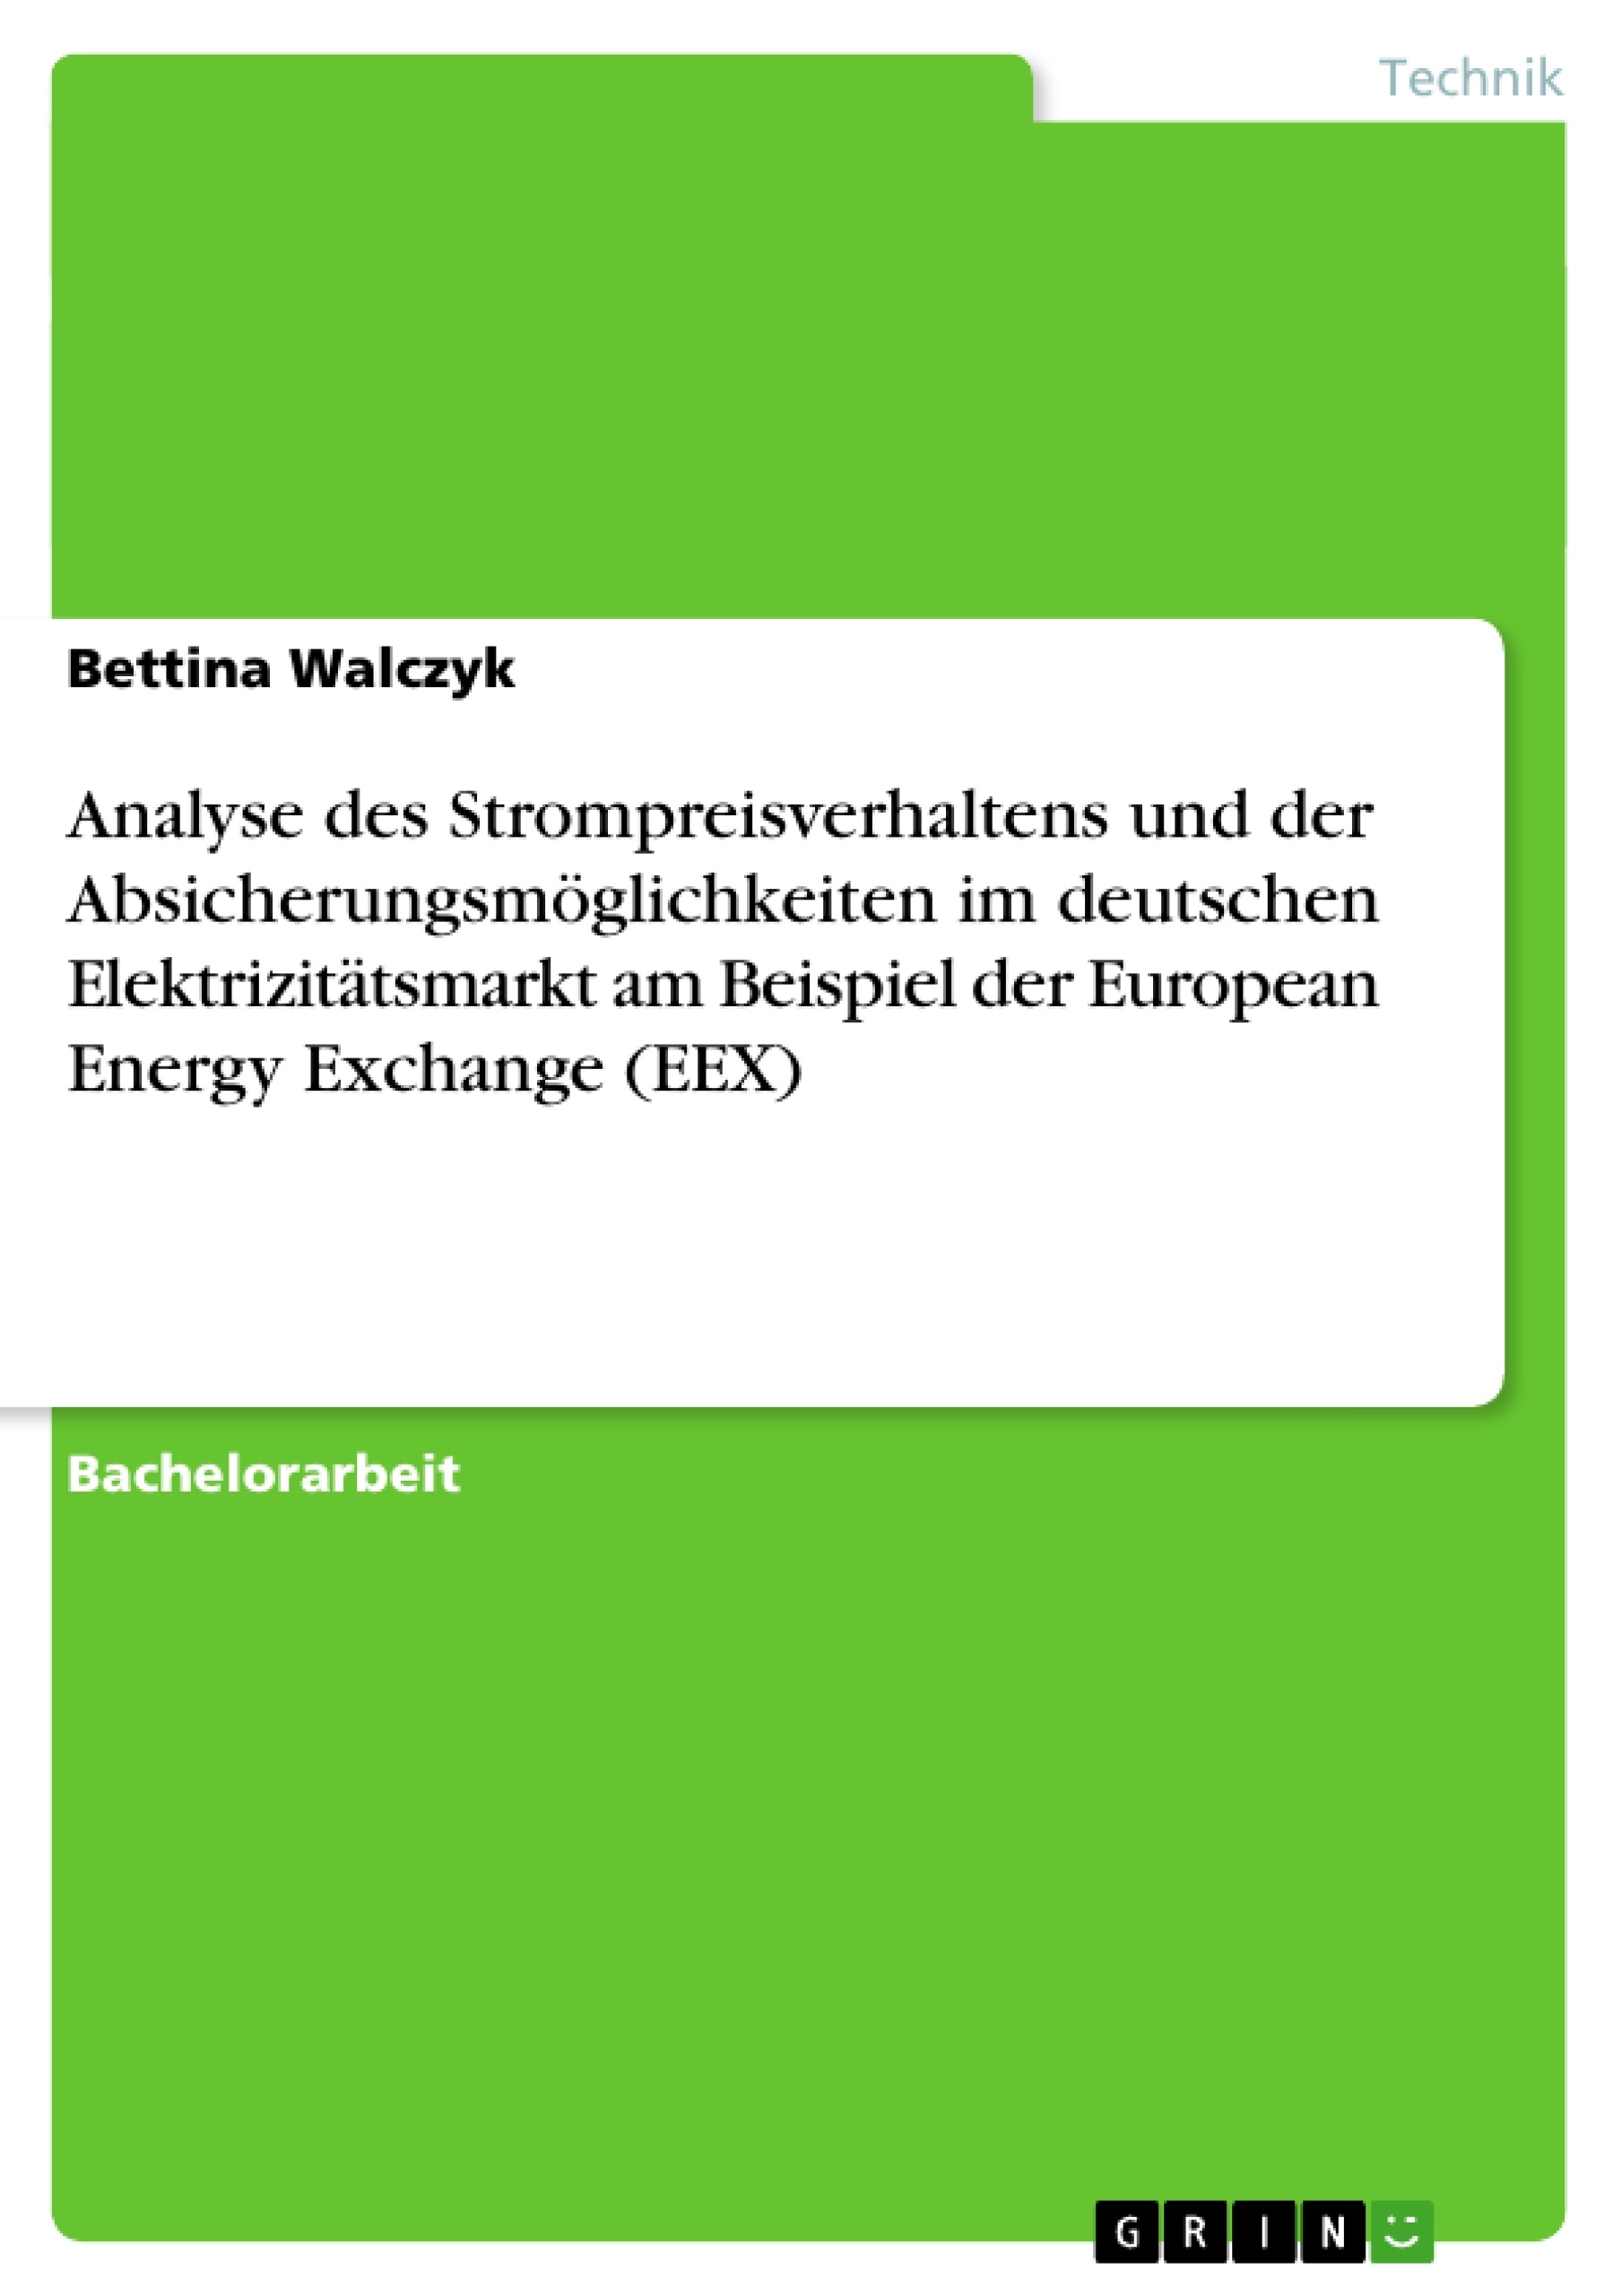 Titel: Analyse des Strompreisverhaltens und der Absicherungsmöglichkeiten im deutschen Elektrizitätsmarkt am Beispiel der European Energy Exchange (EEX)